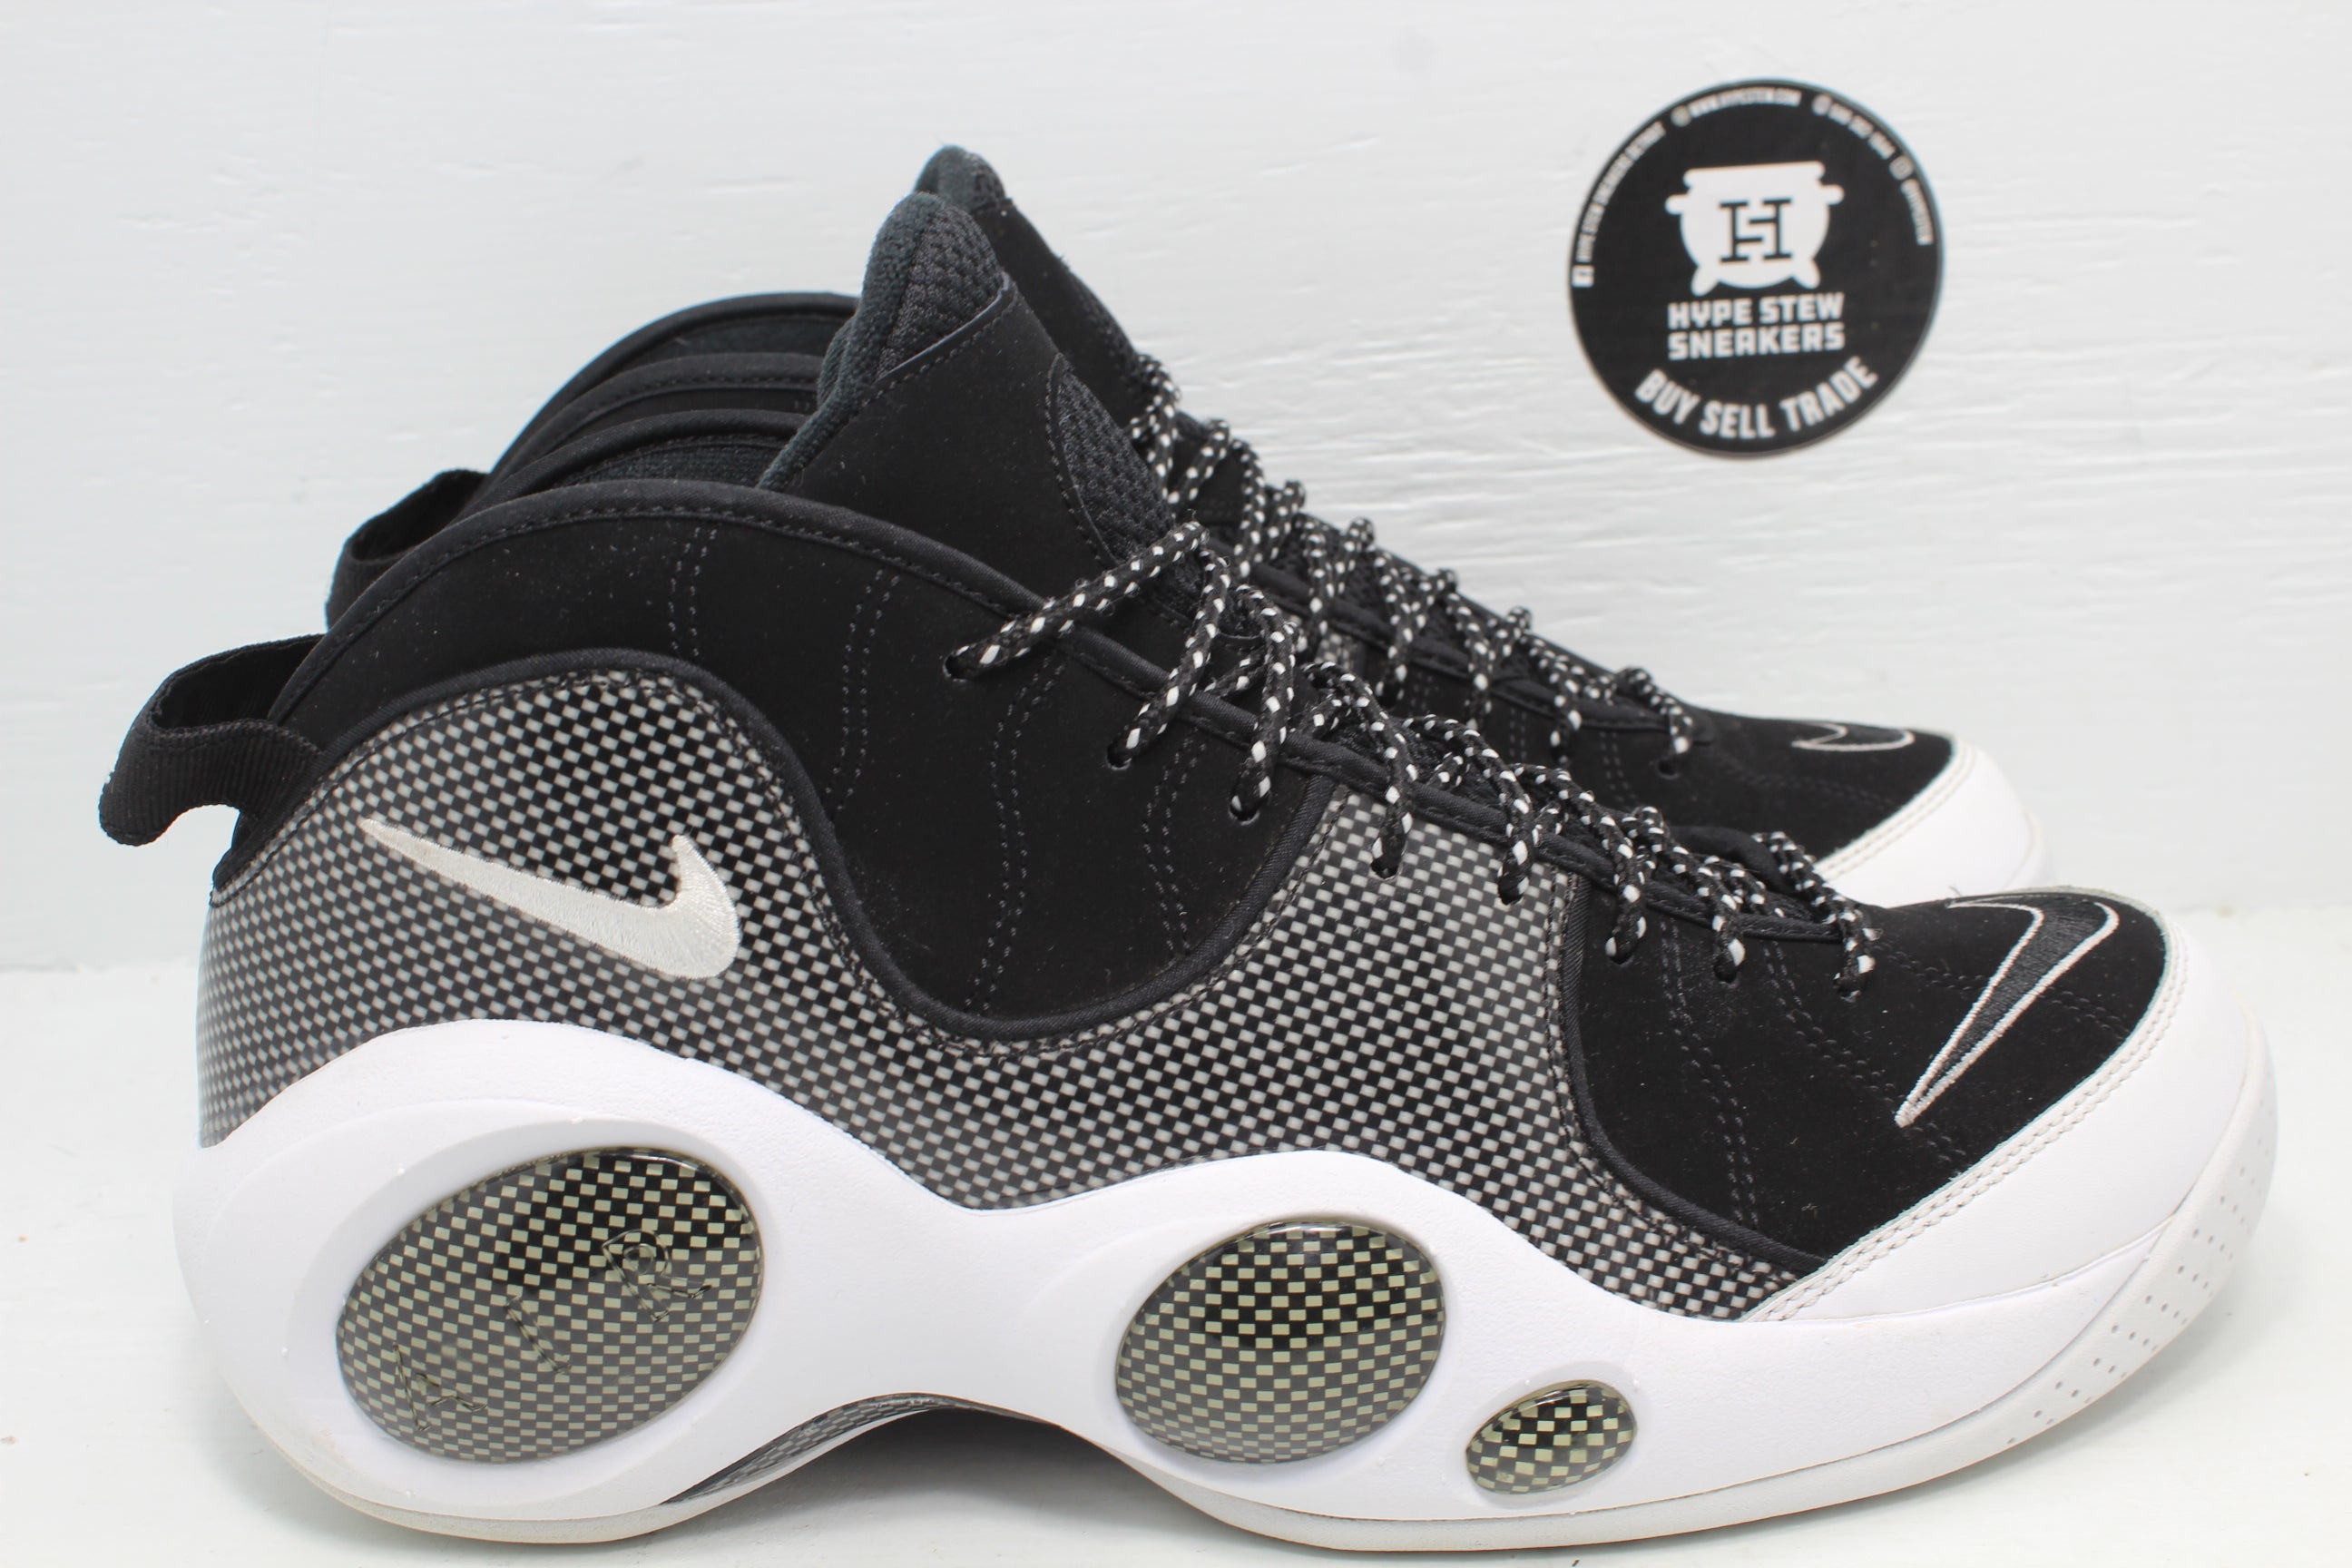 Nike Air Zoom Flight 95 Black Metallic Silver | Hype Stew Sneakers